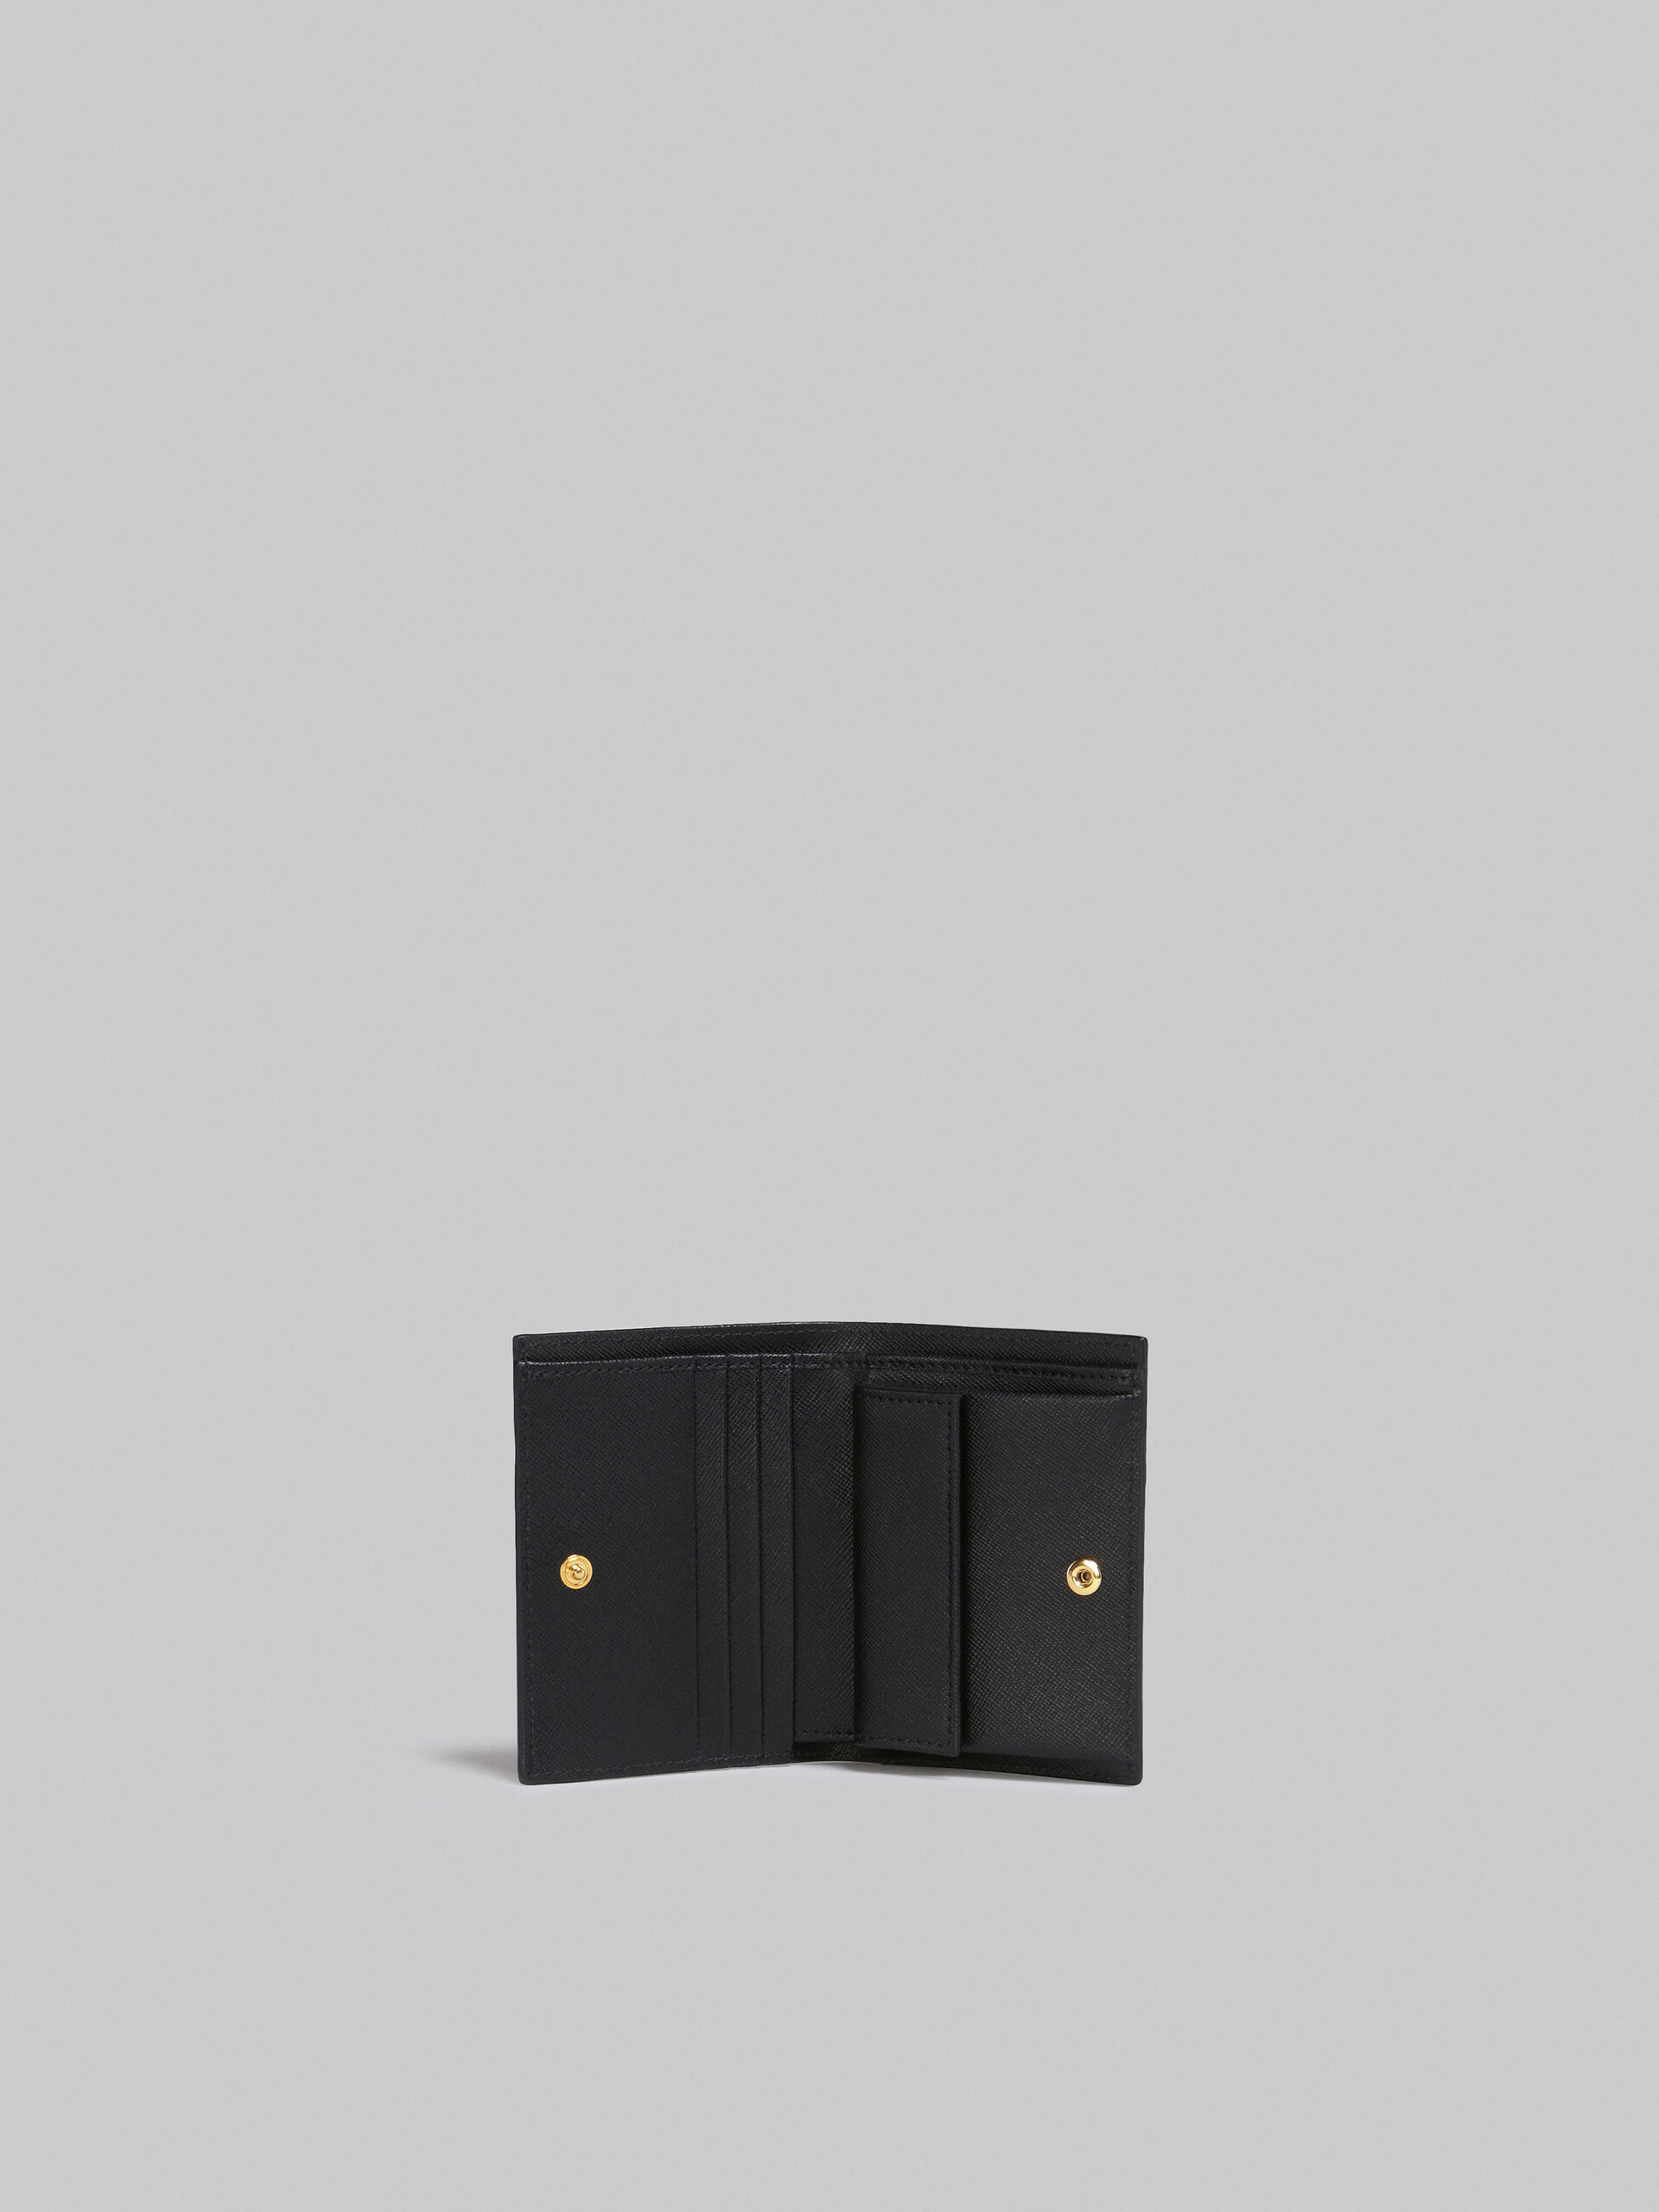 Portafoglio bi-fold in saffiano nero - Portafogli - Image 2